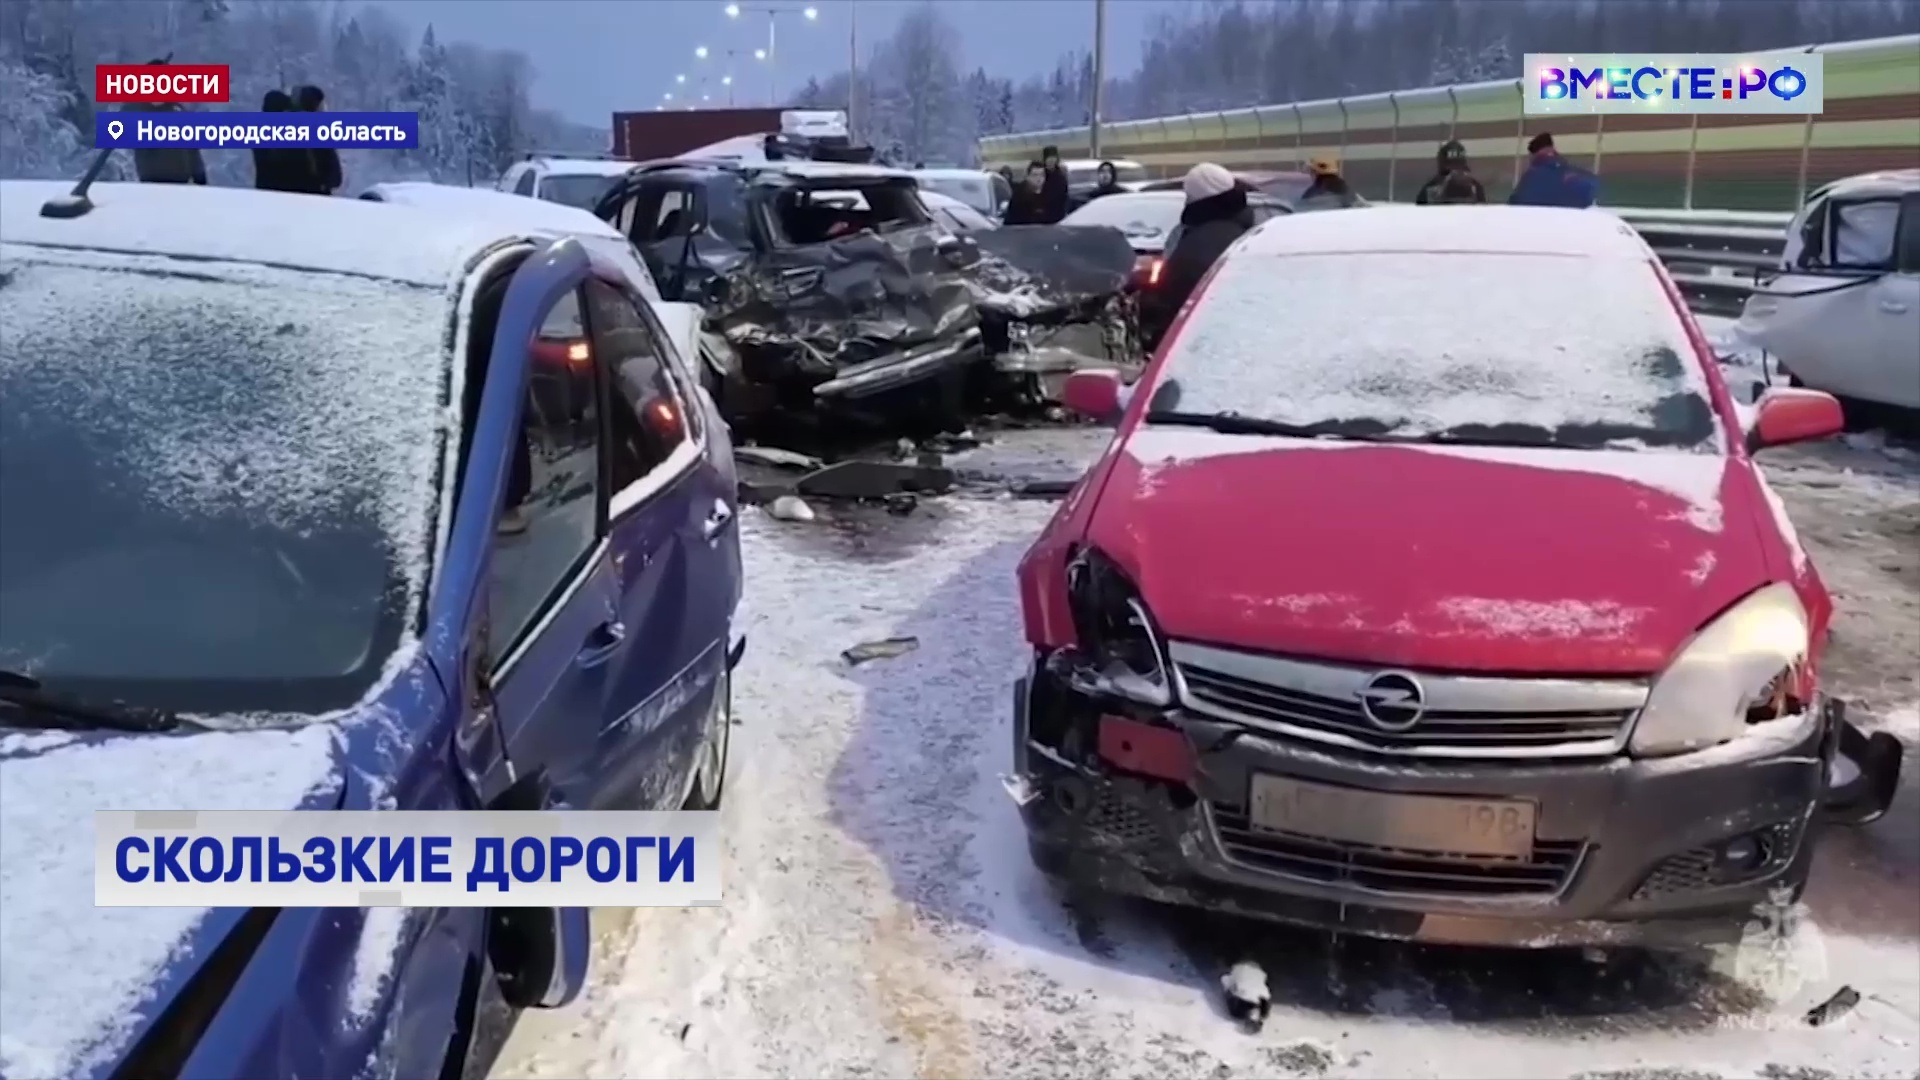 Несколько серьезных аварий произошло на трассах в РФ, есть погибшие